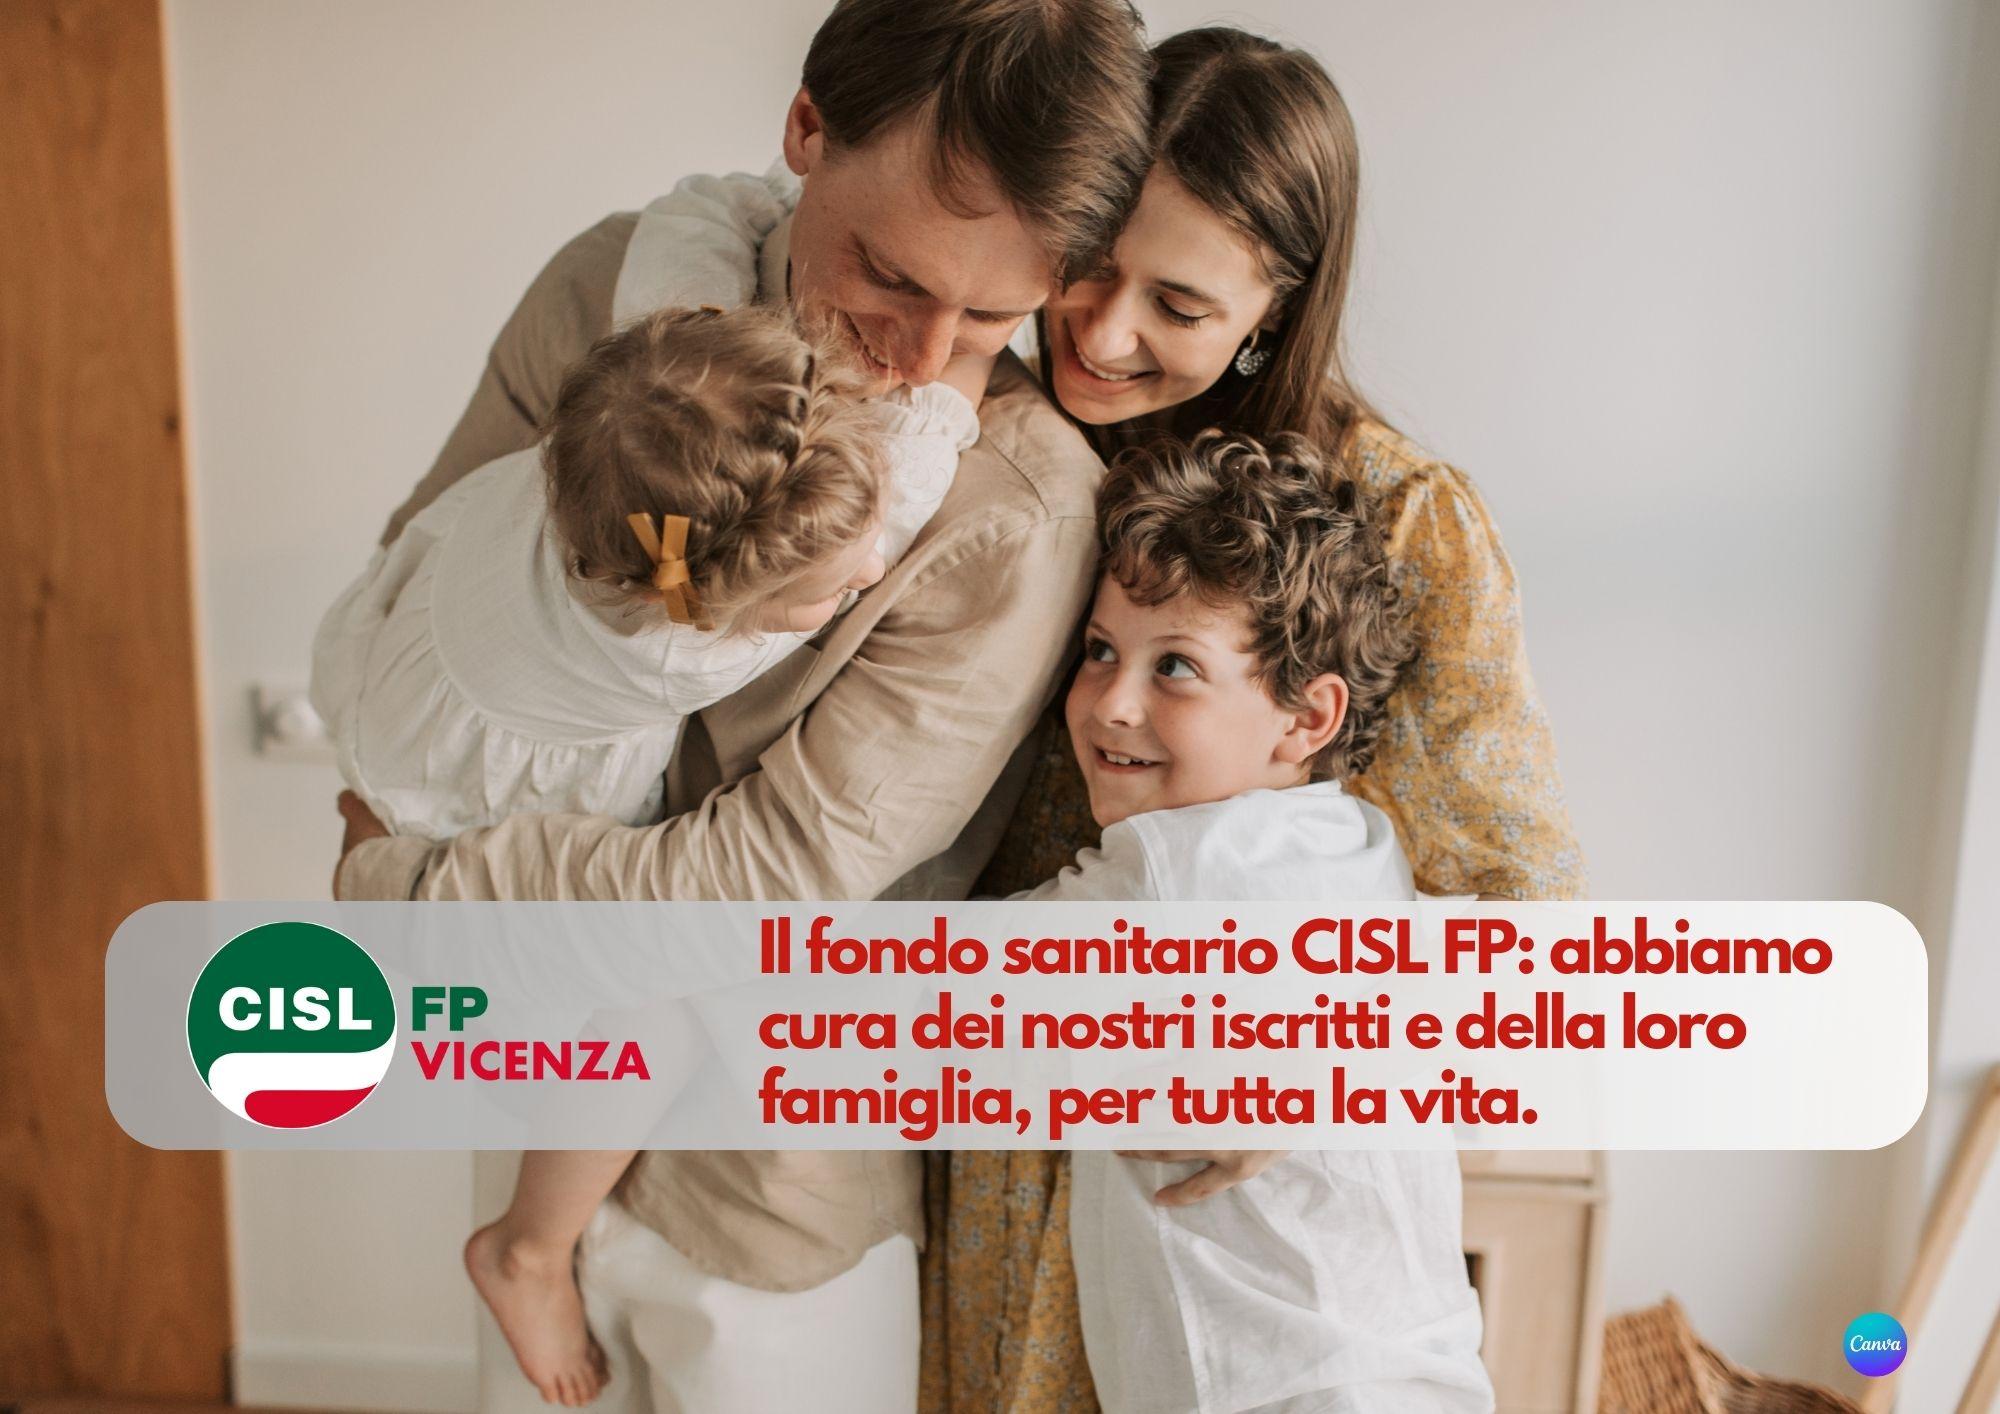 CISL FP Vicenza. Nasce il Fondo Sanitario CISL FP. Anche con patologie pregresse, per tutta la vita